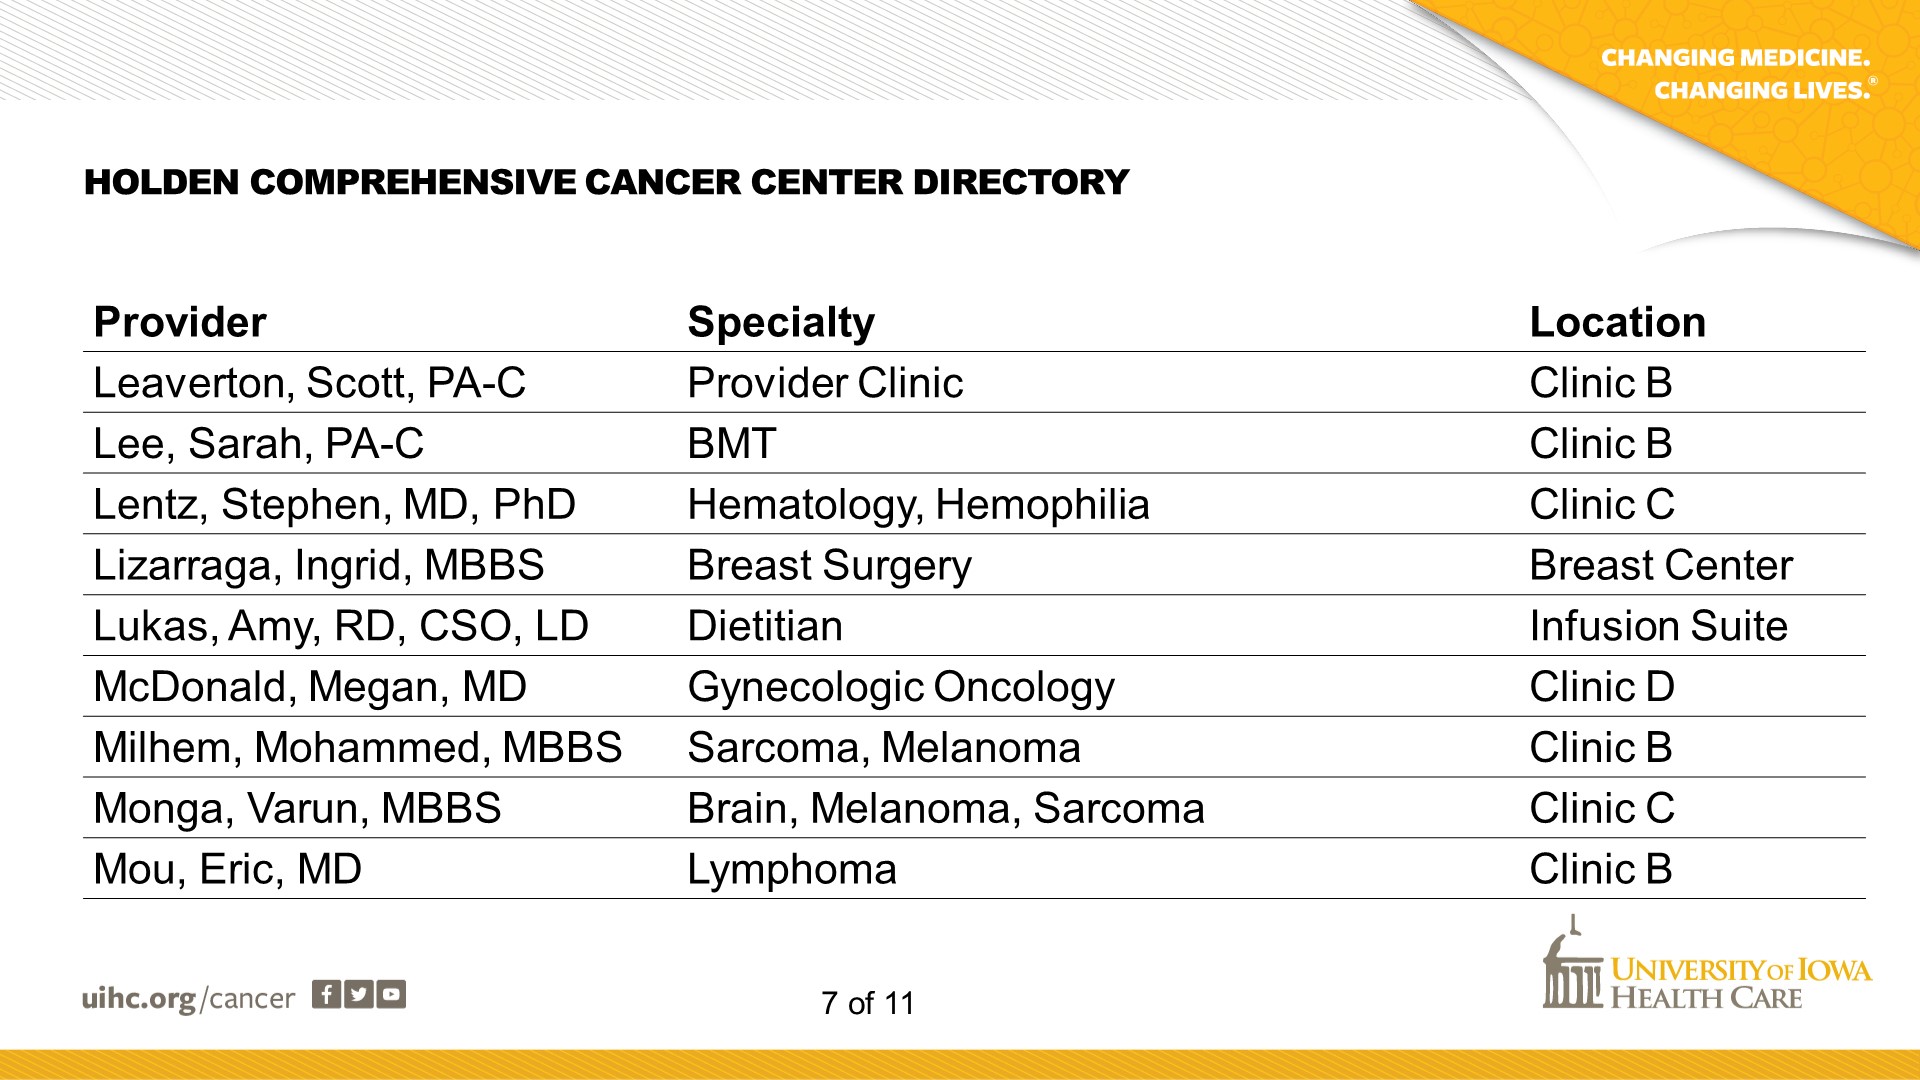 Cancer Center Directory - Slide 7